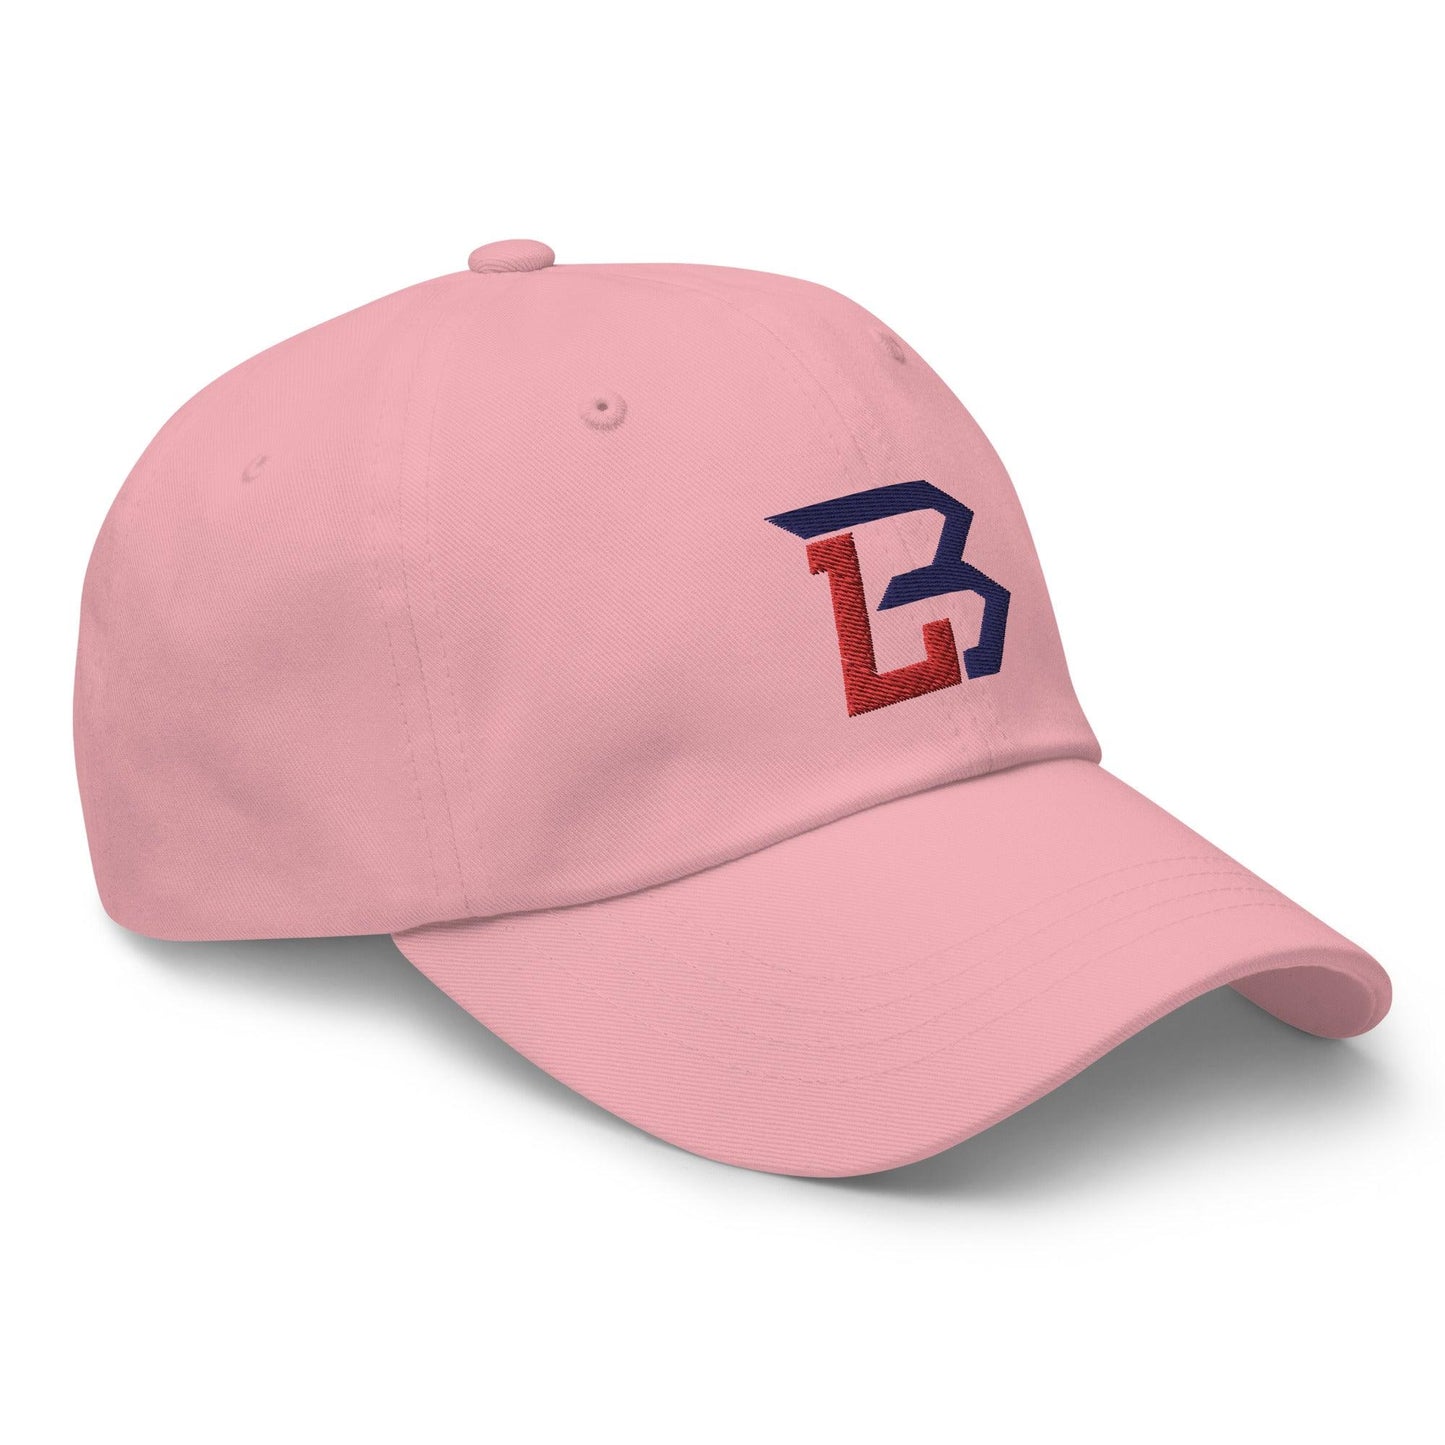 Brendon Little "Essential" hat - Fan Arch